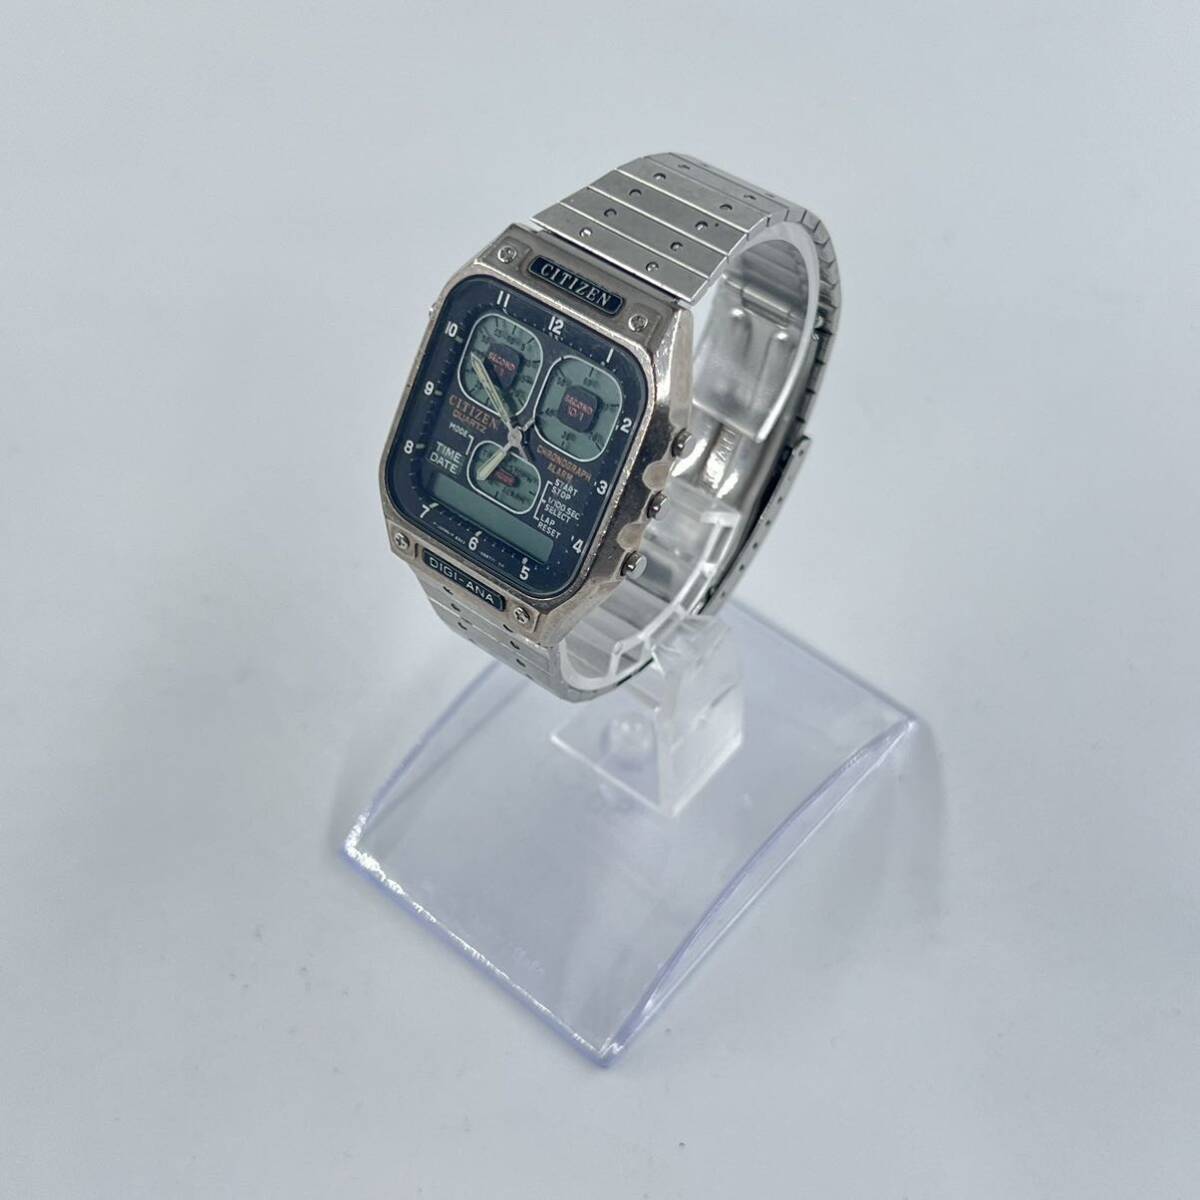 G4 CITIZEN シチズン 腕時計 DIGI-ANA デジアナ スクエア メンズ時計の画像1